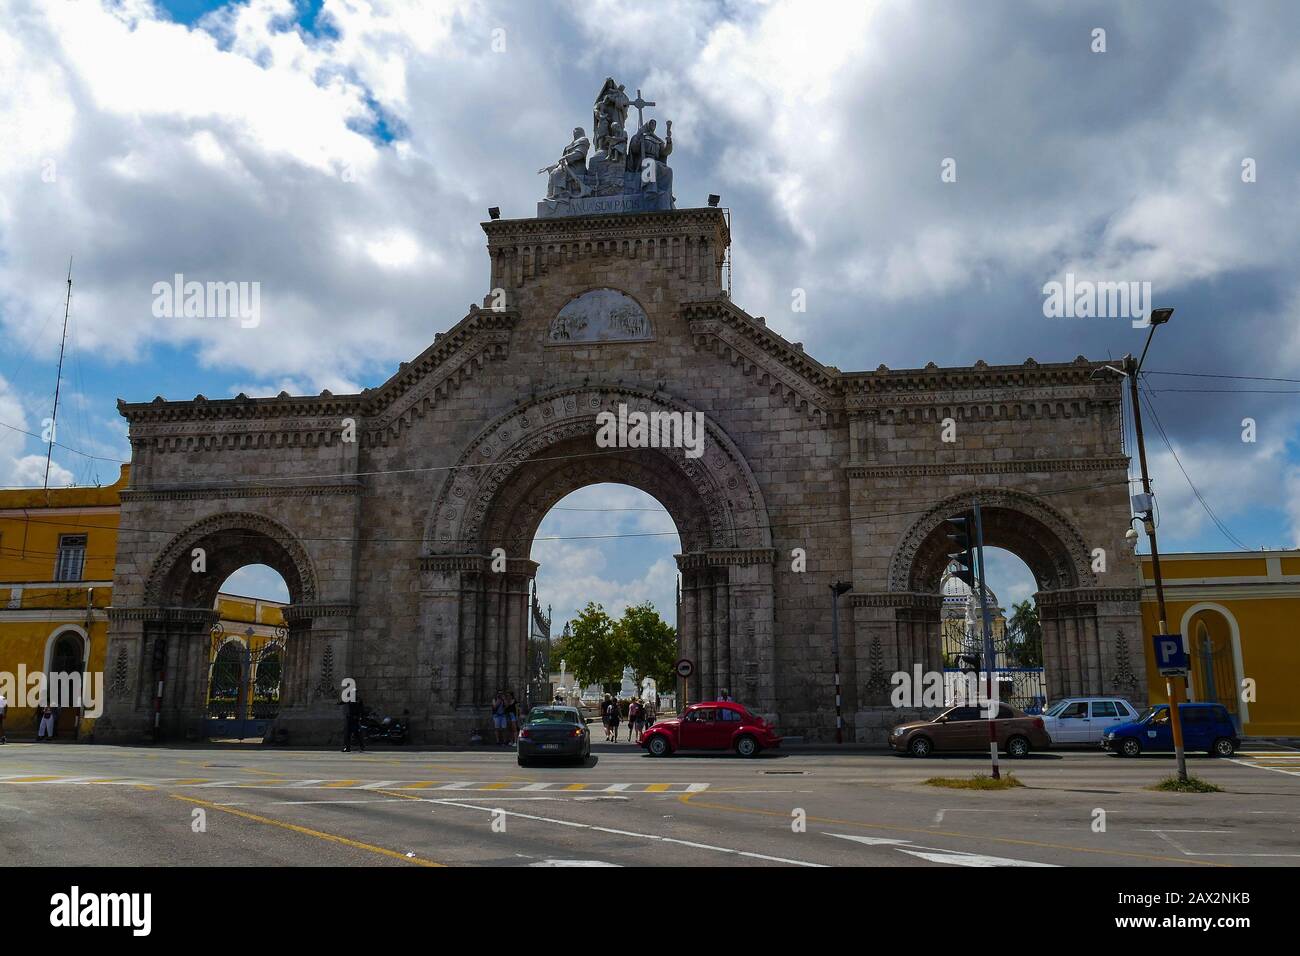 Le cimetière de Columbus est une nécropole située à Cuba dans le quartier El Vedado de la Havane et fondée en 1876 Banque D'Images